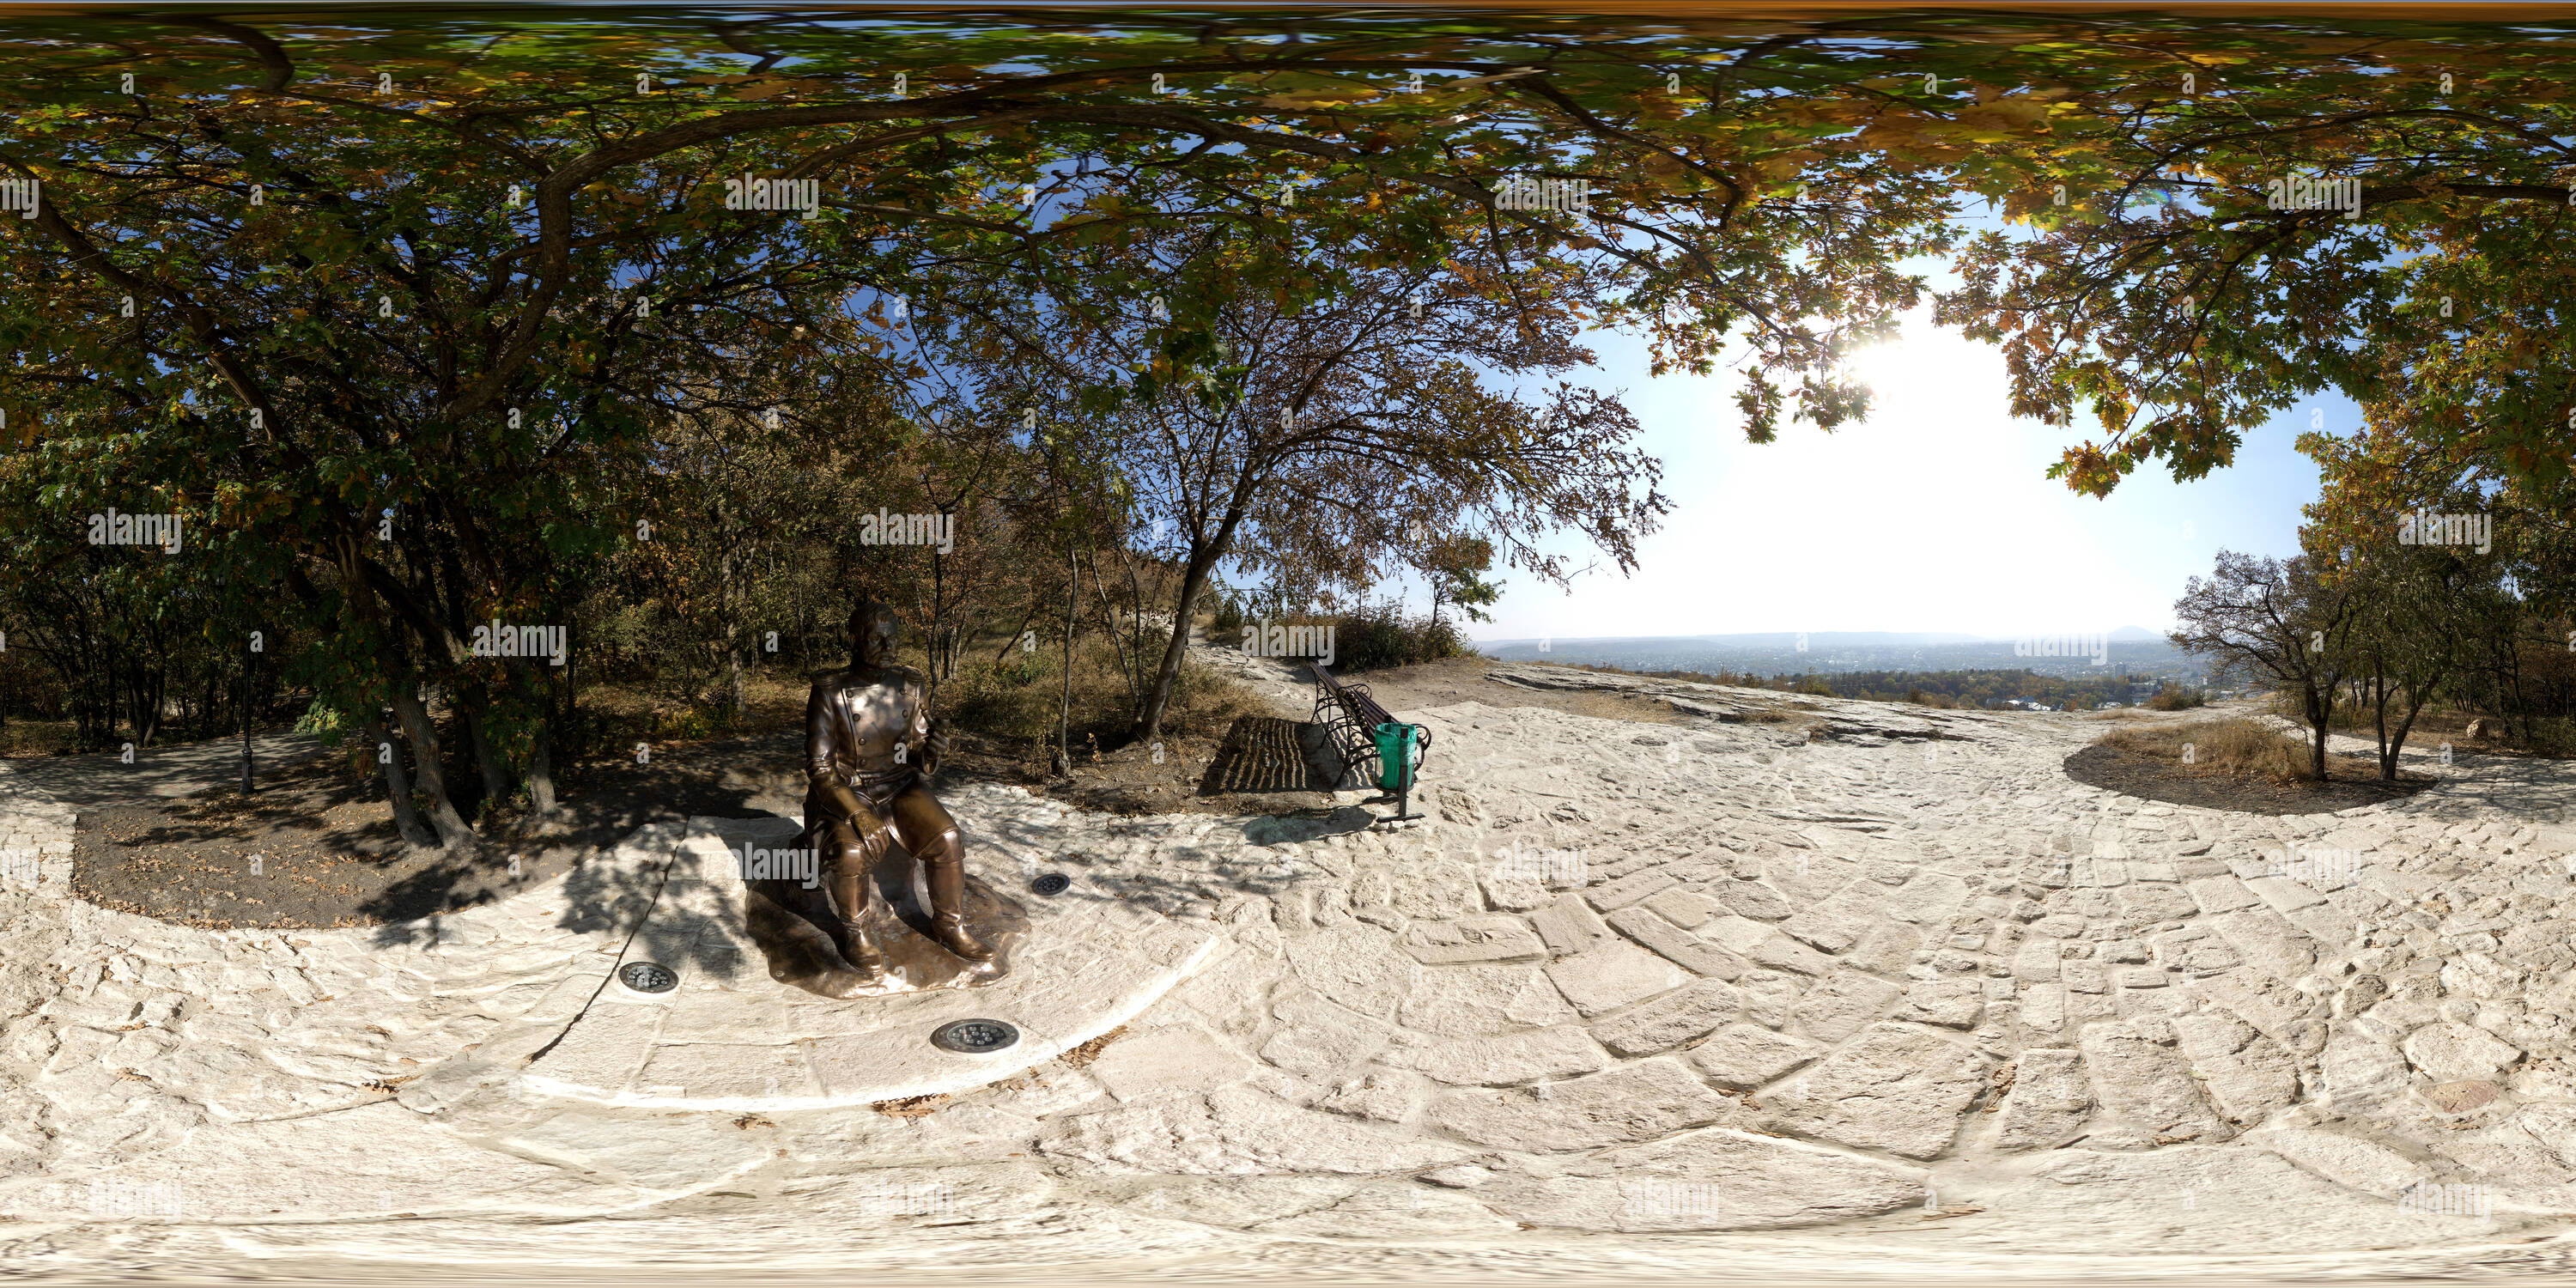 Visualizzazione panoramica a 360 gradi di Емануелевский парк после реконструкции 2020. Солдат